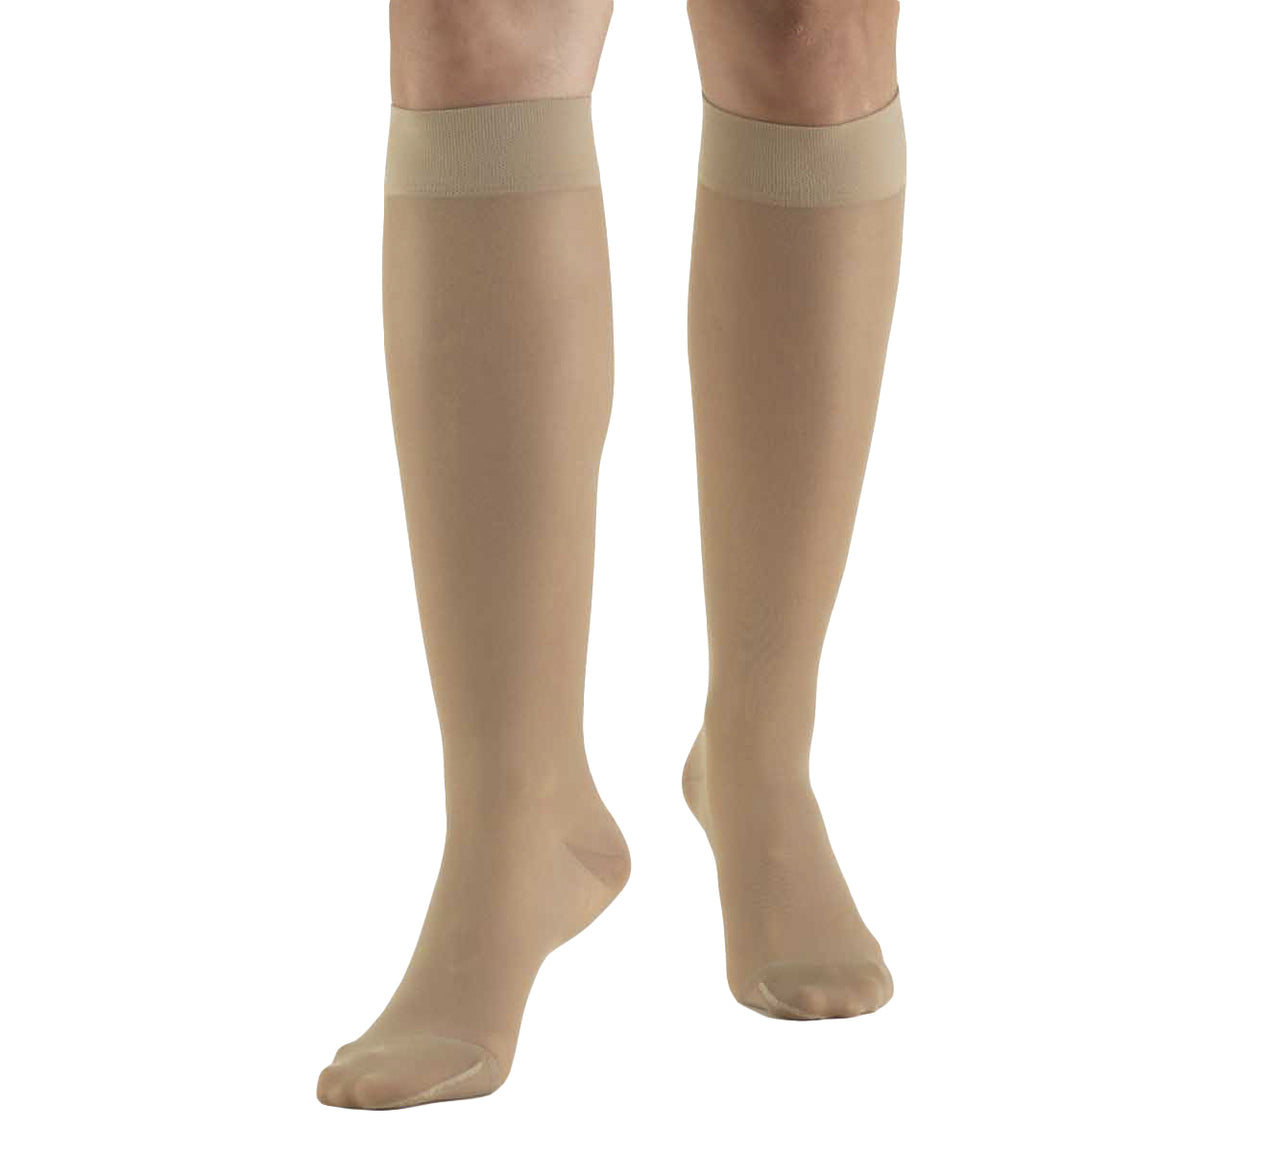 Truform Sheer Lite Compression Hose for Women, Knee High Closed Toe 15-20mmHg